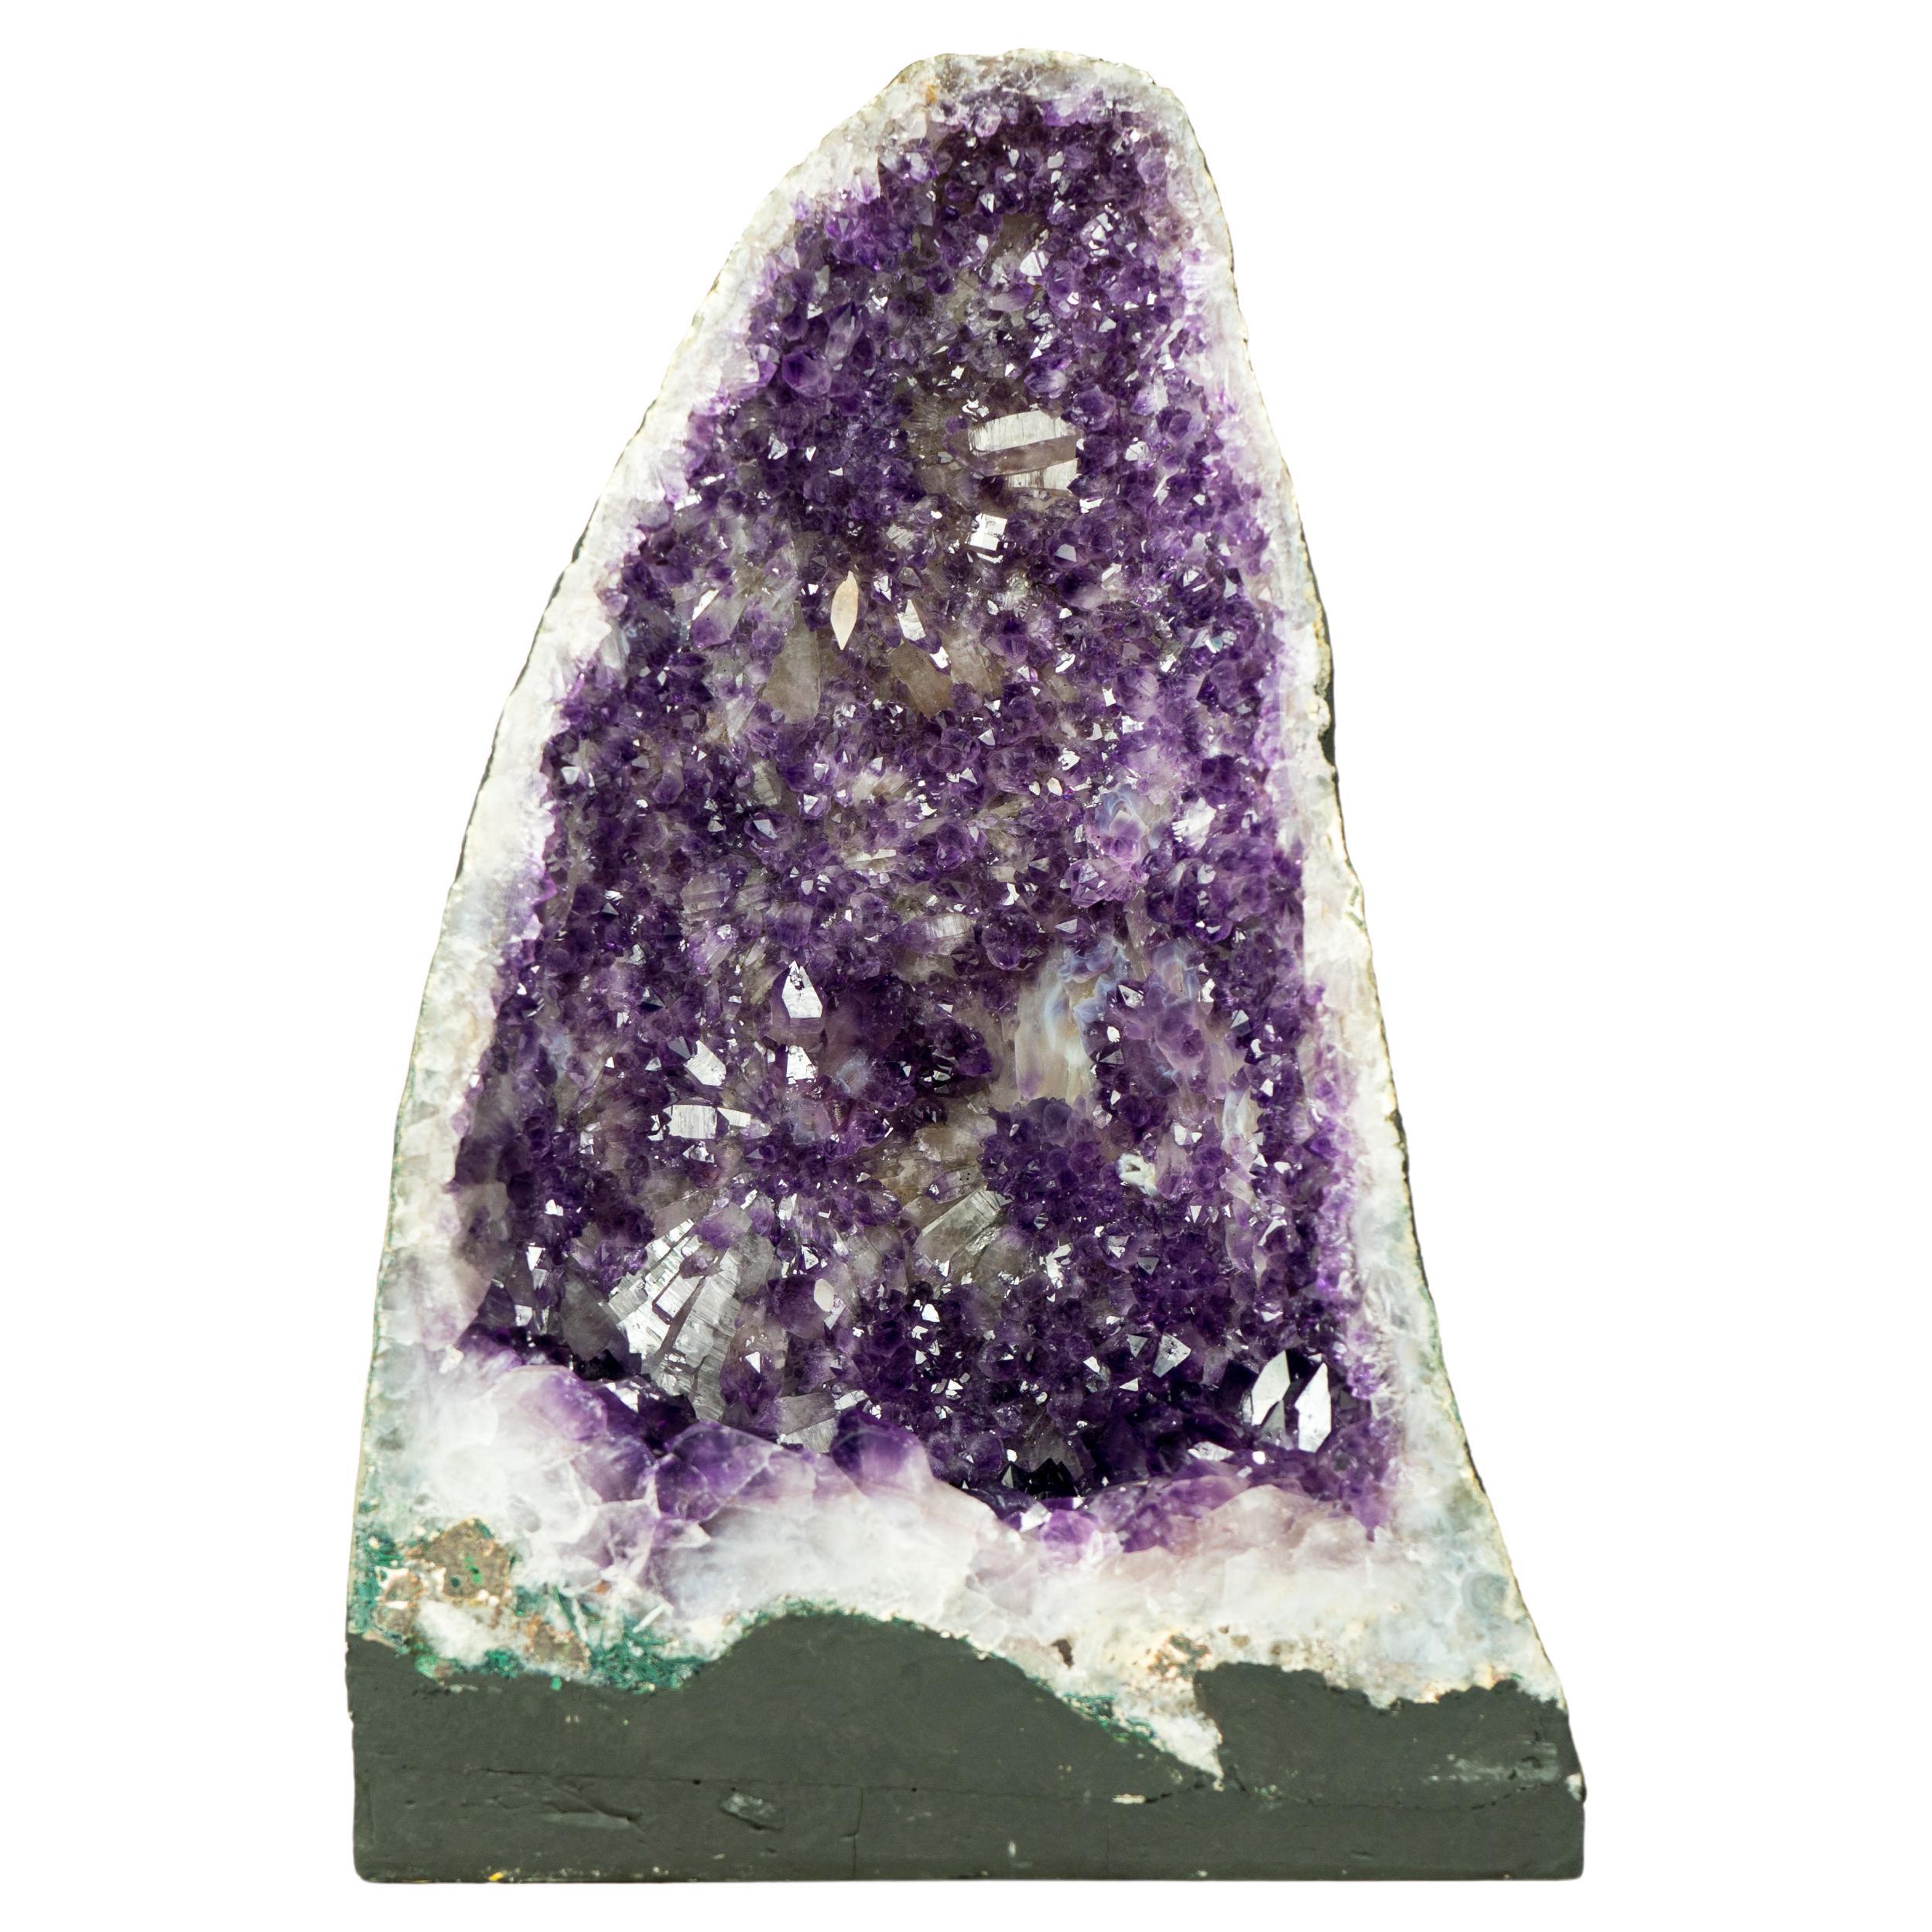 Geode d'améthyste d'un violet profond avec une forme de Druzy rare ressemblant à une fleur et une calcite